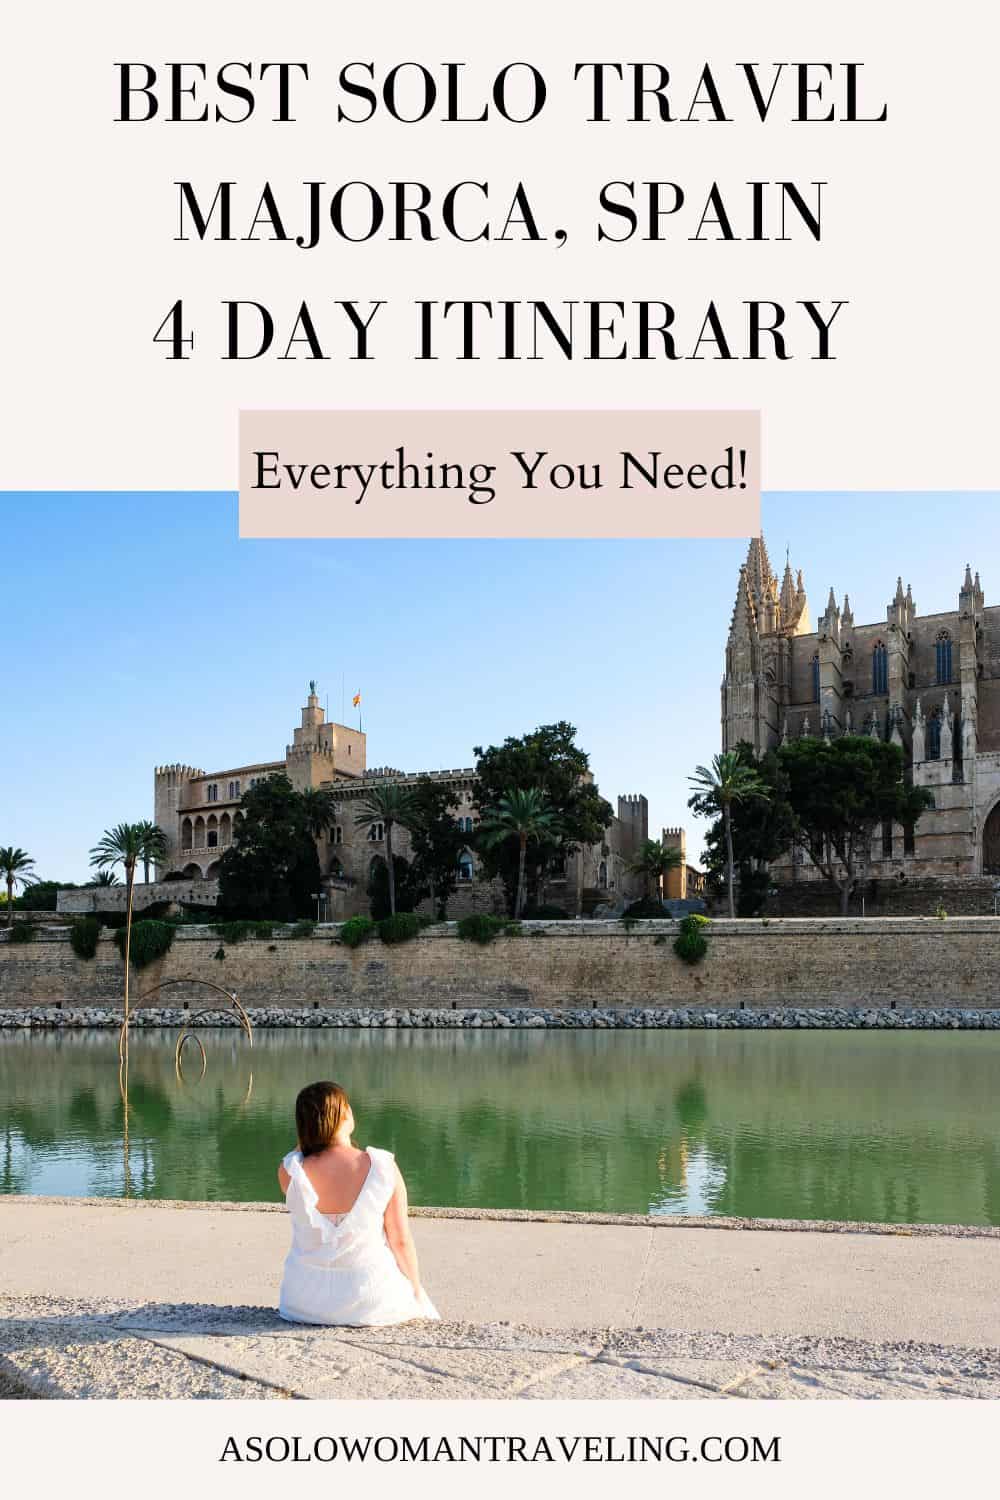 Best Travel Guide for Majorca Spain